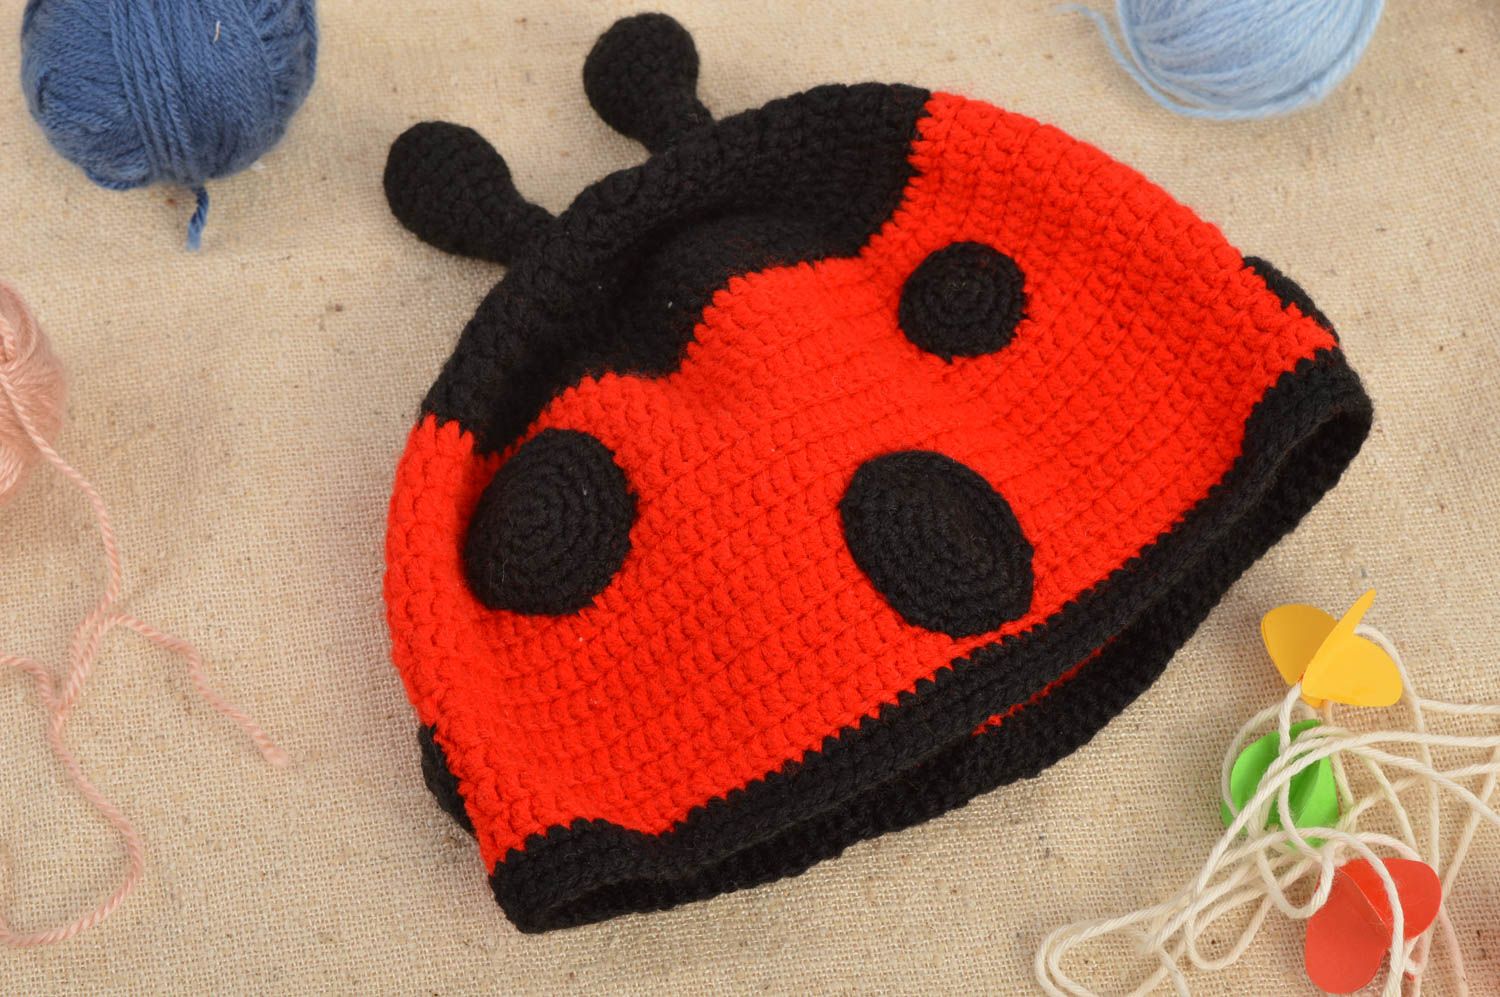 Cute handmade crochet hat baby hat designs crochet ideas warm winter hat photo 1